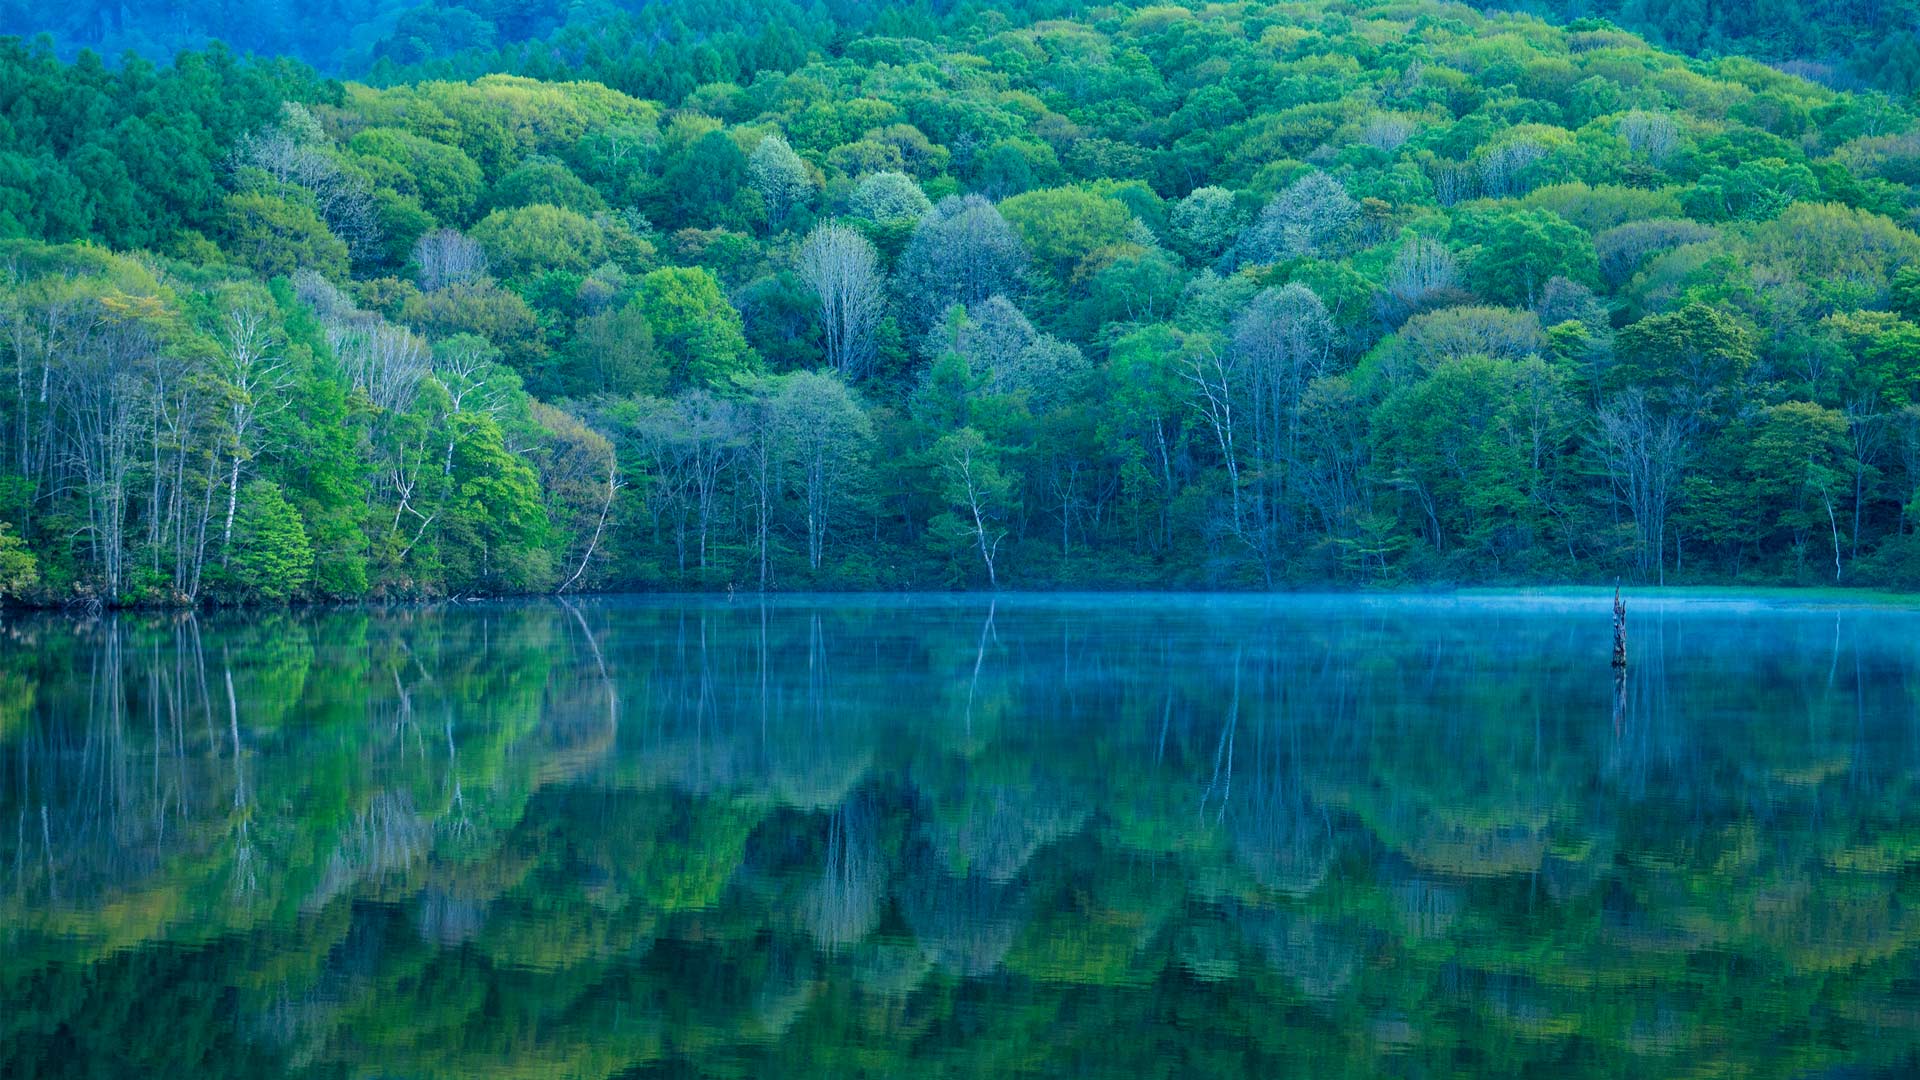 Uno specchio che riflette la bellezza della natura